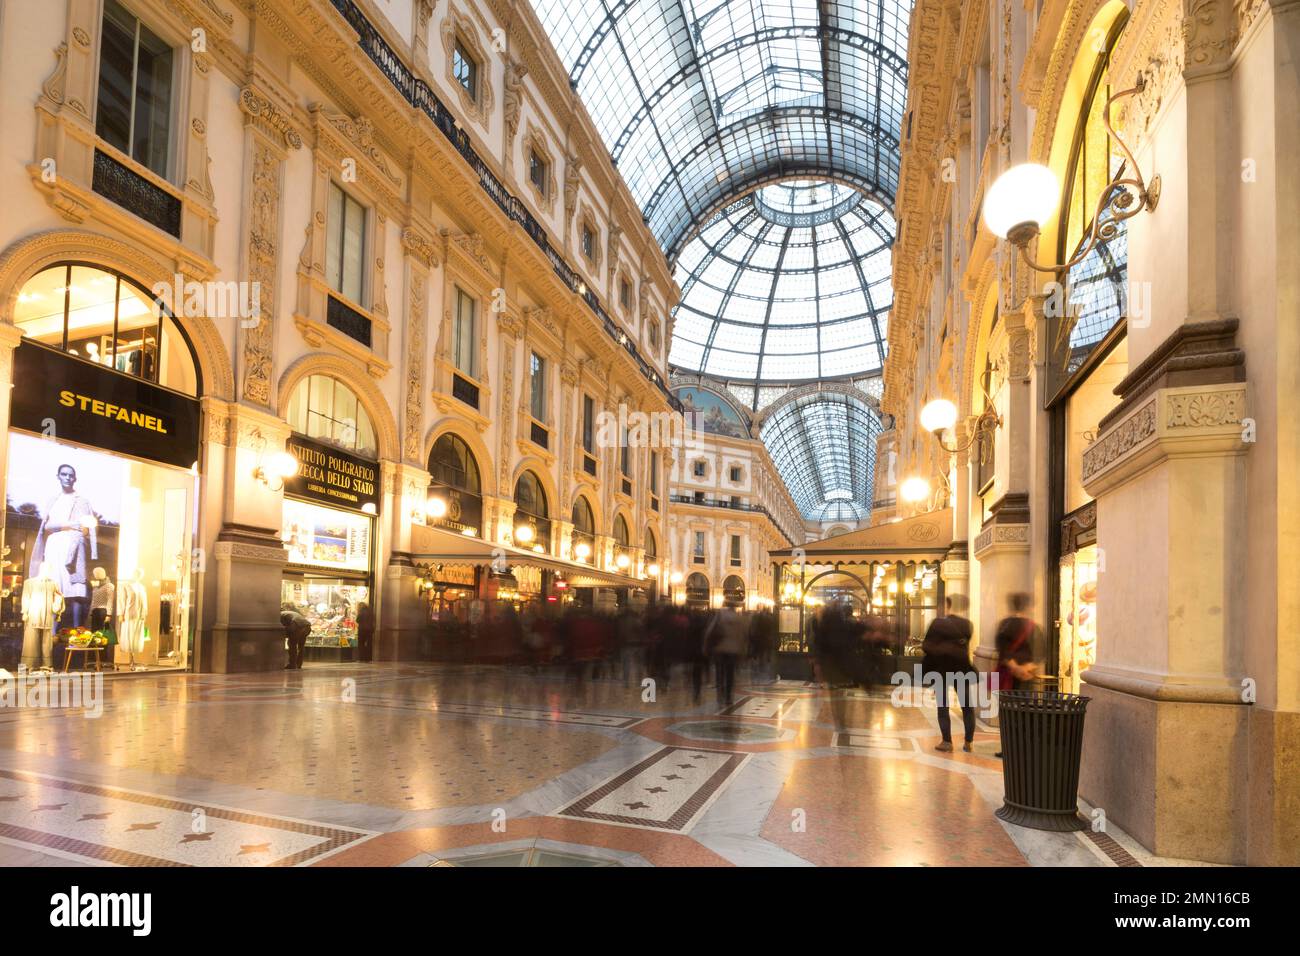 Italia, Milano, la Galleria Vittorio Emanuele II, uno dei centri commerciali più antichi del mondo. Foto Stock